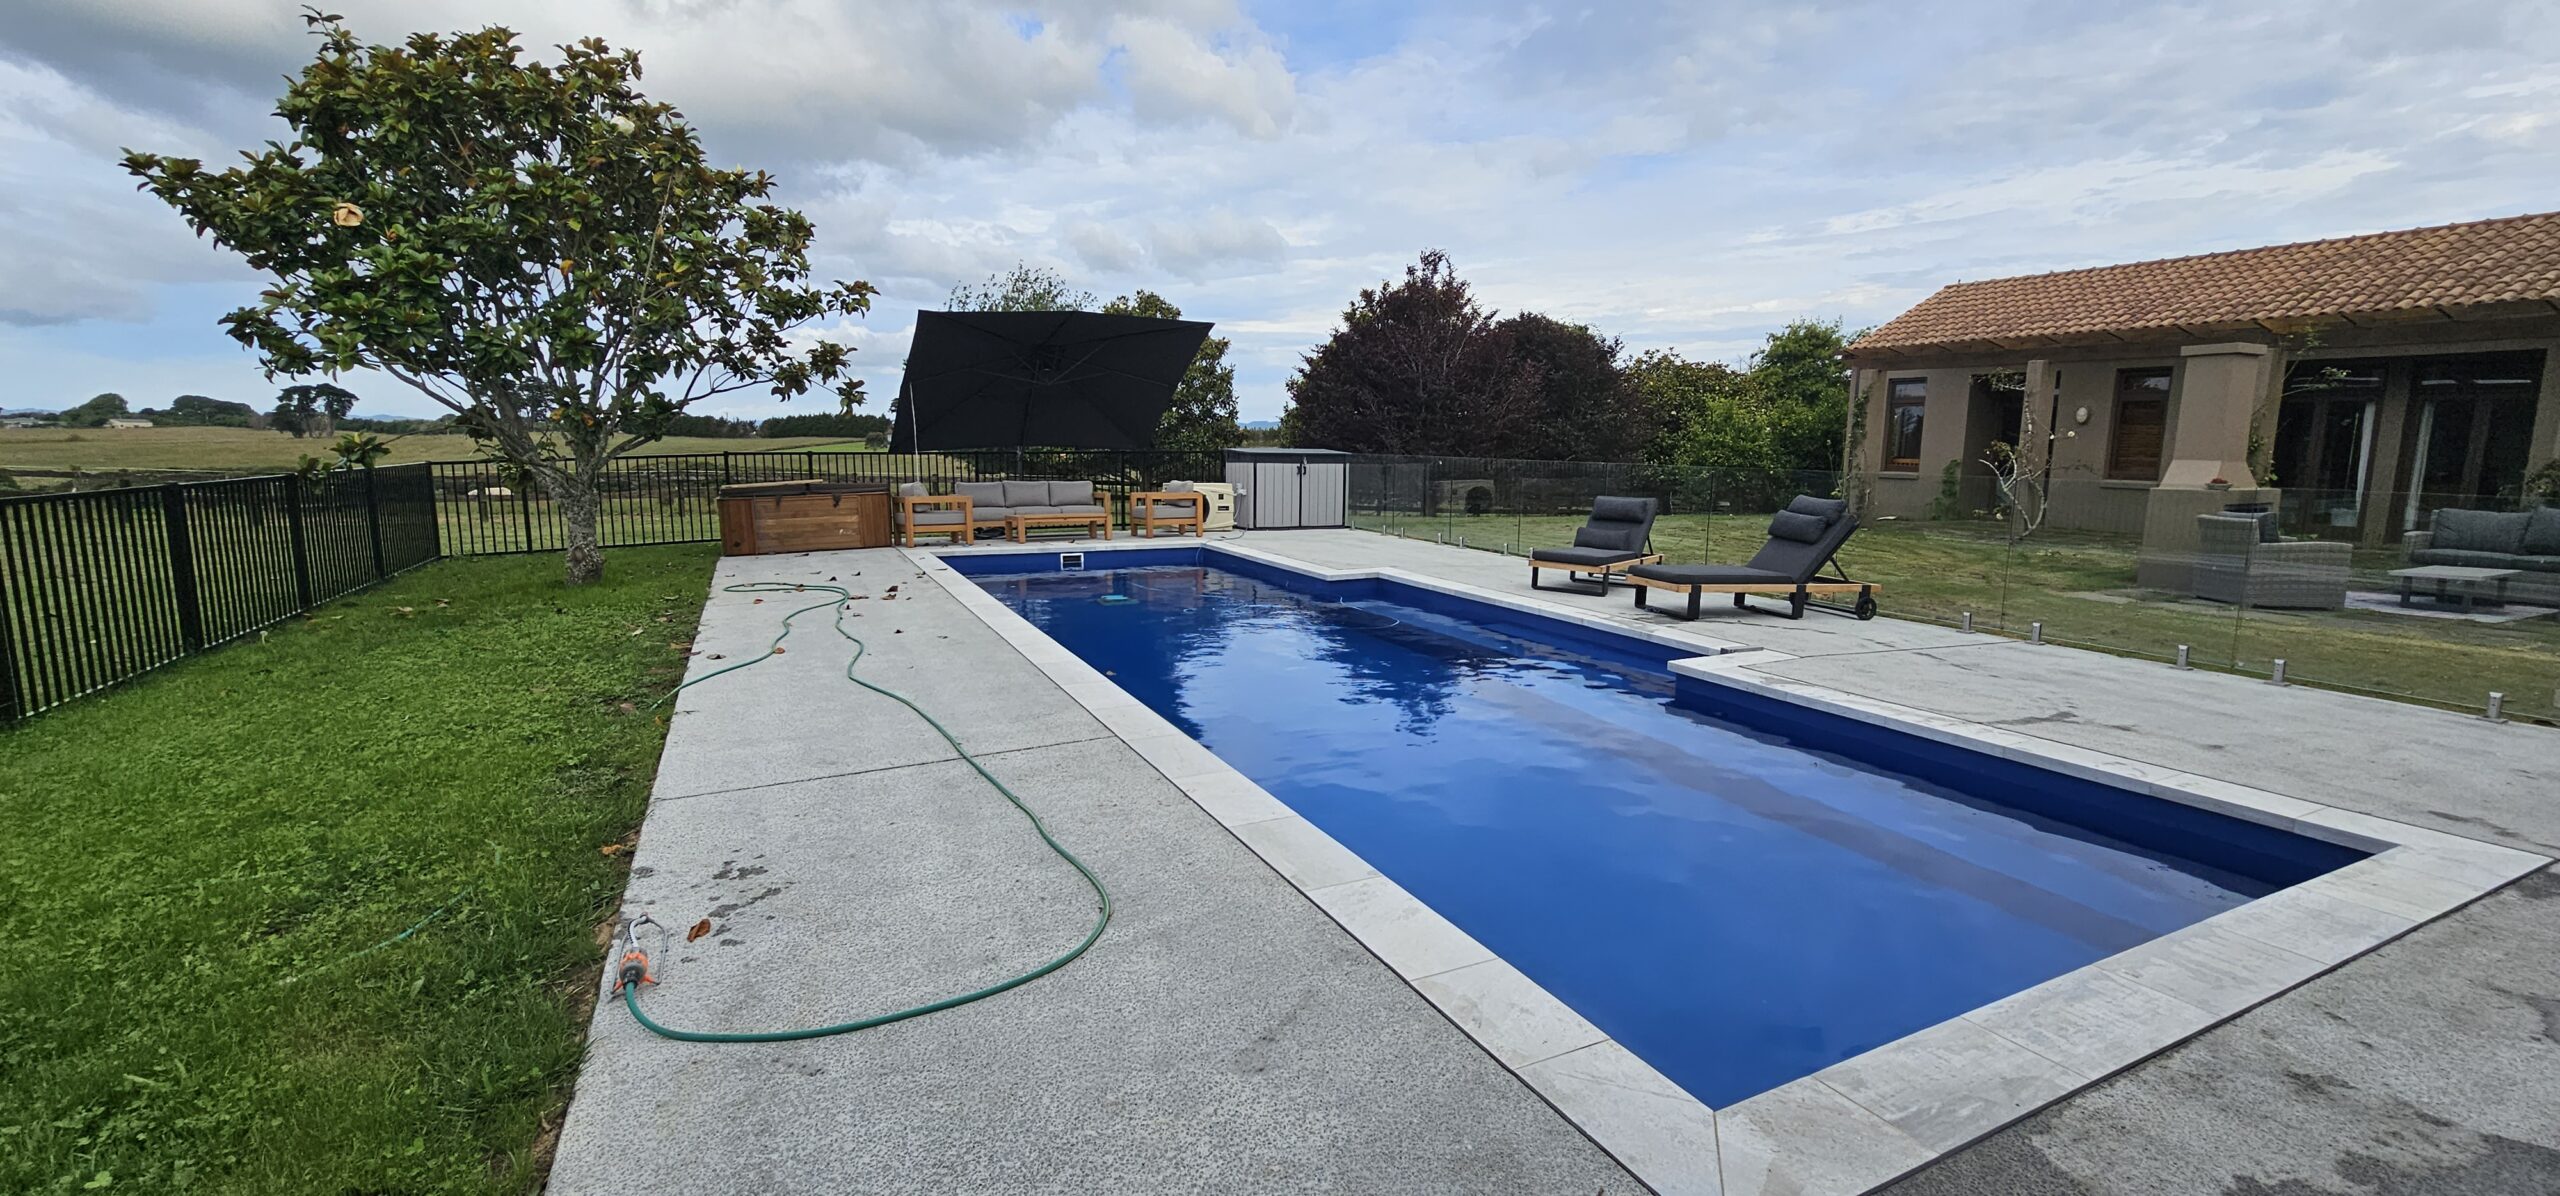 12 meter inground fibreglass swimming pool